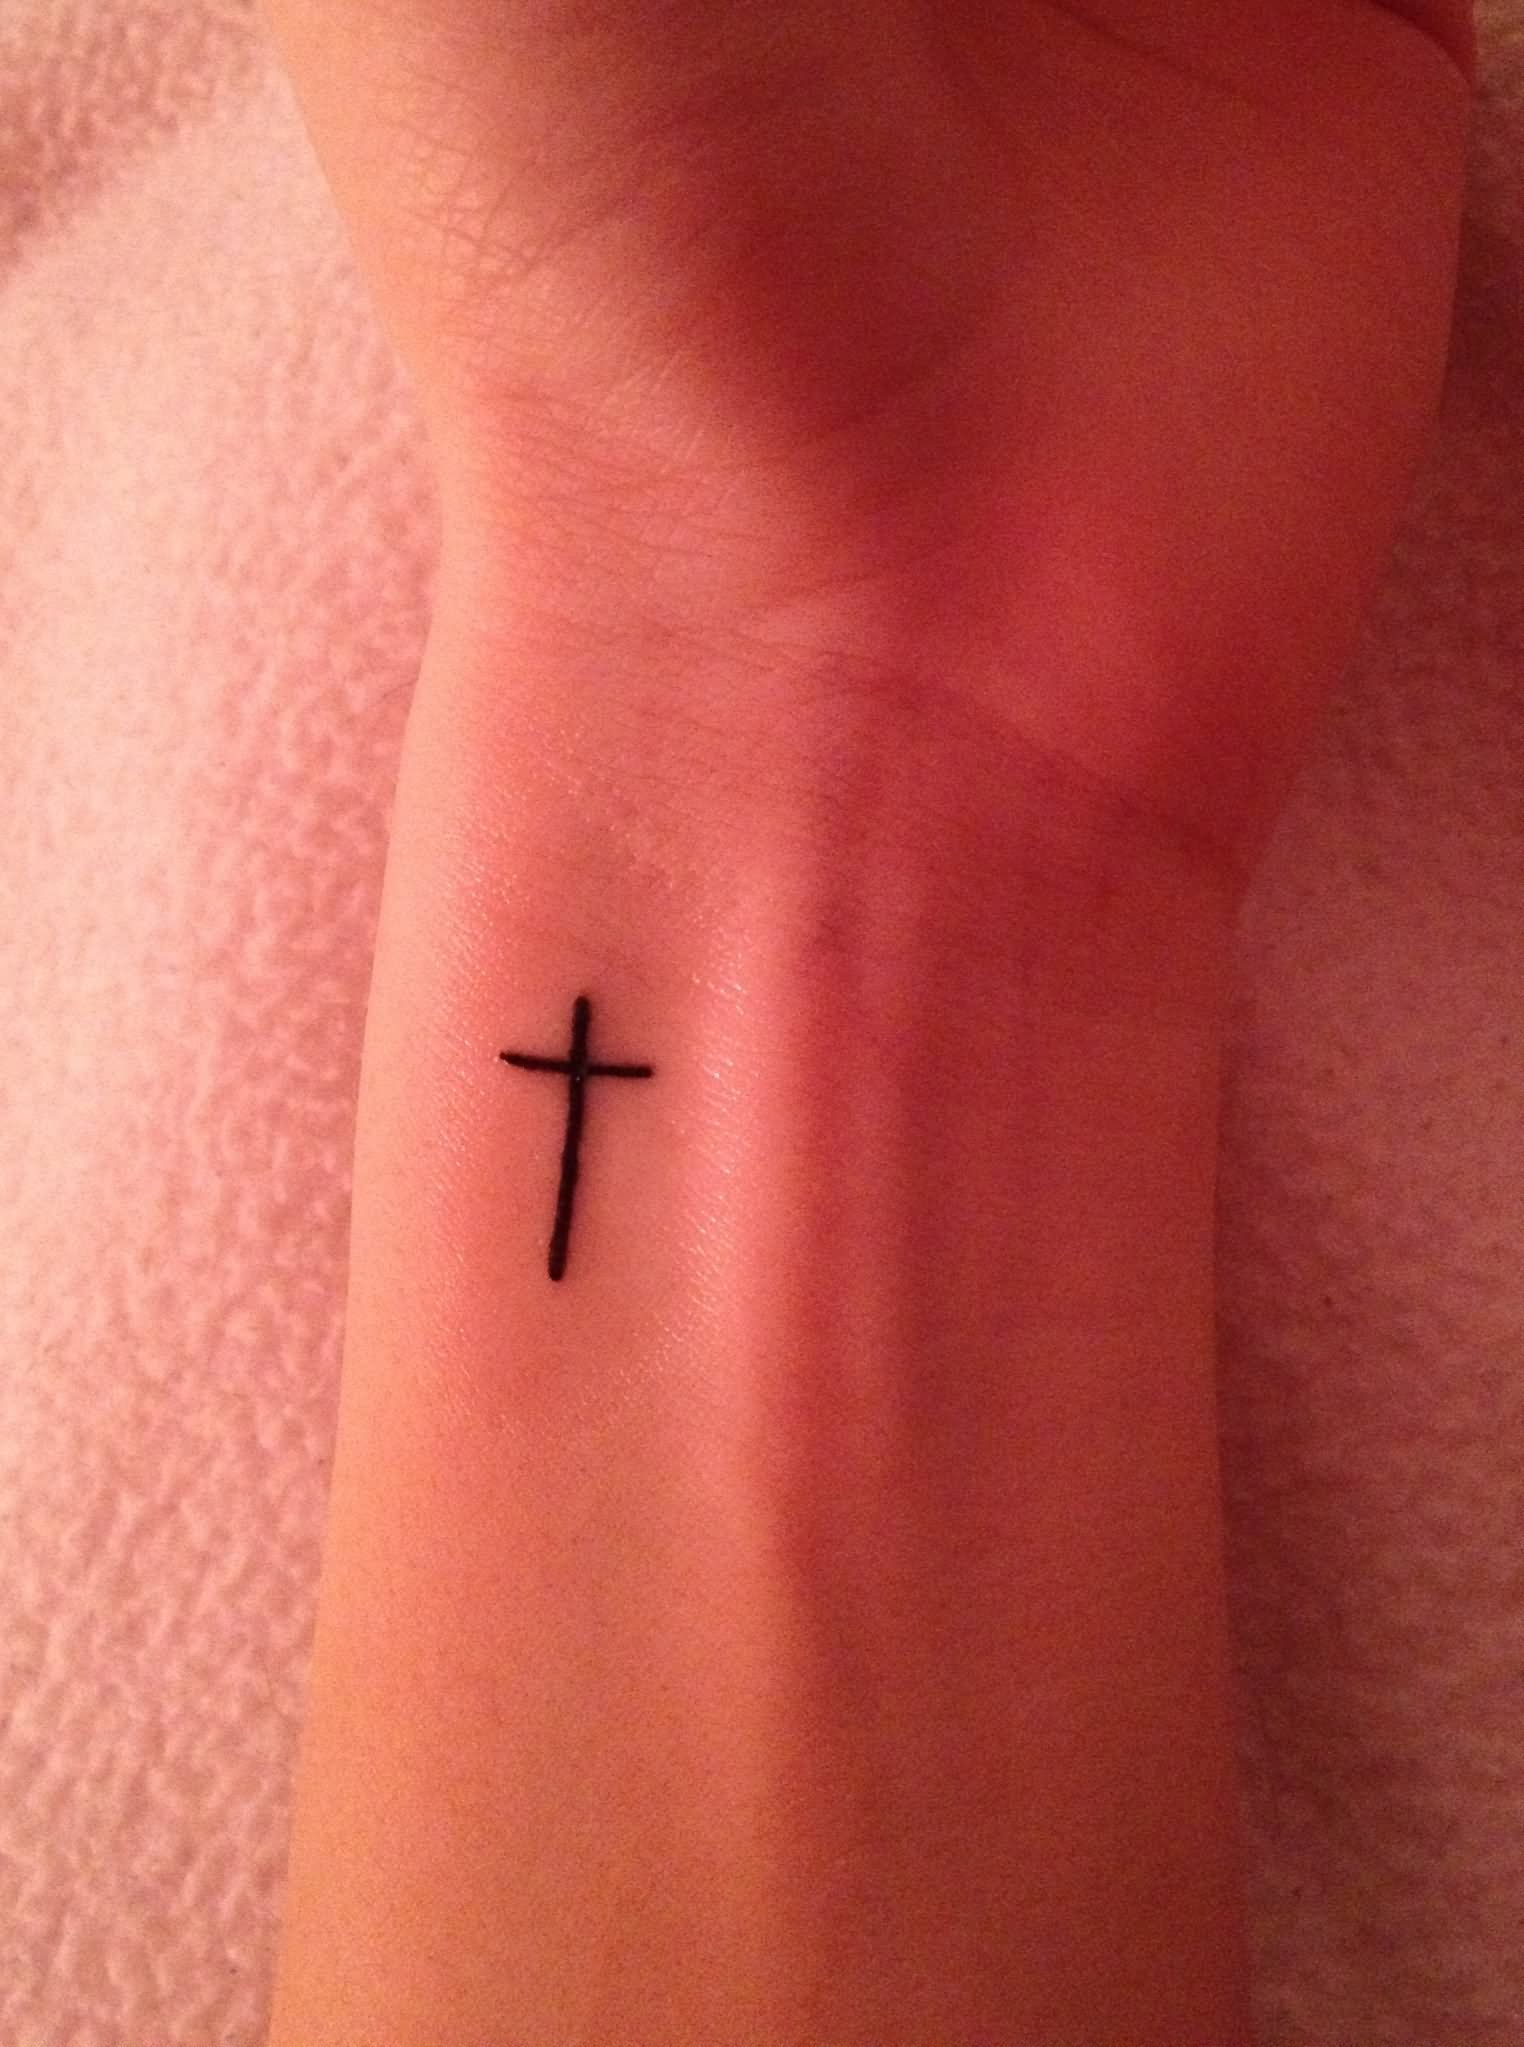 Simple Cross Wrist Tattoos For Girls Tattoos Tattoos Cross inside dimensions 1524 X 2047